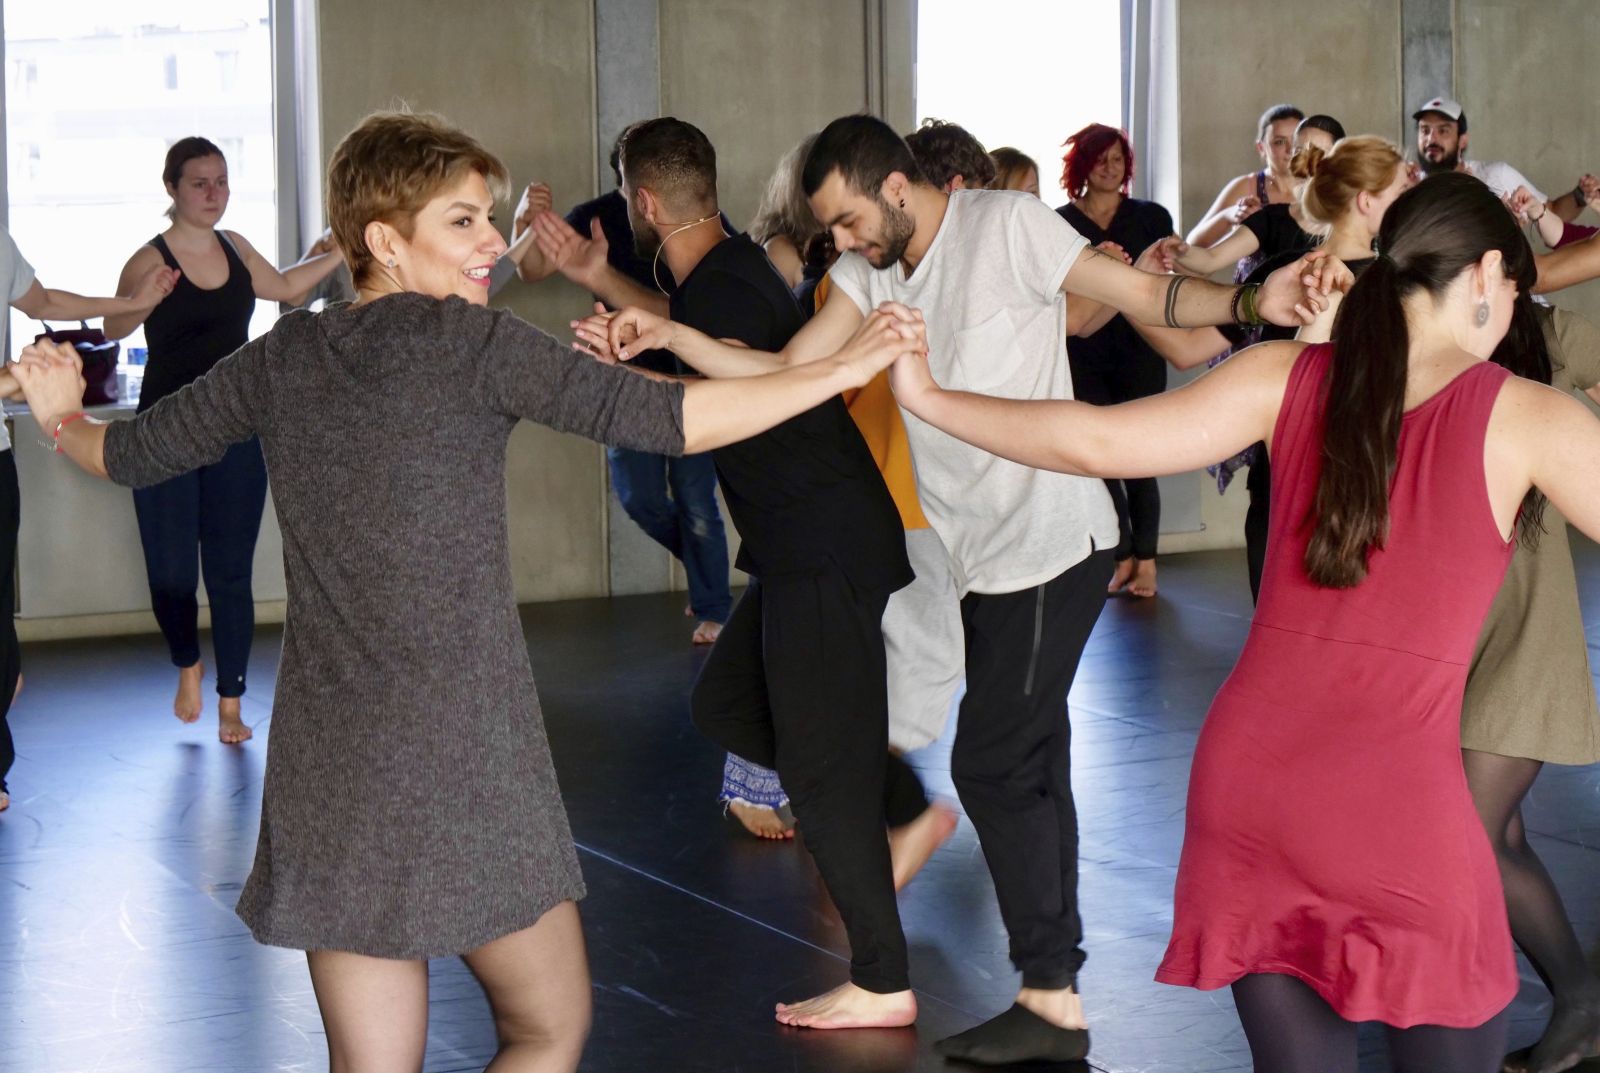 Anderer Kulturen verstehen lernen: Syrische Migranten bringen Deutschen den arabischen Tanz Dabke bei.